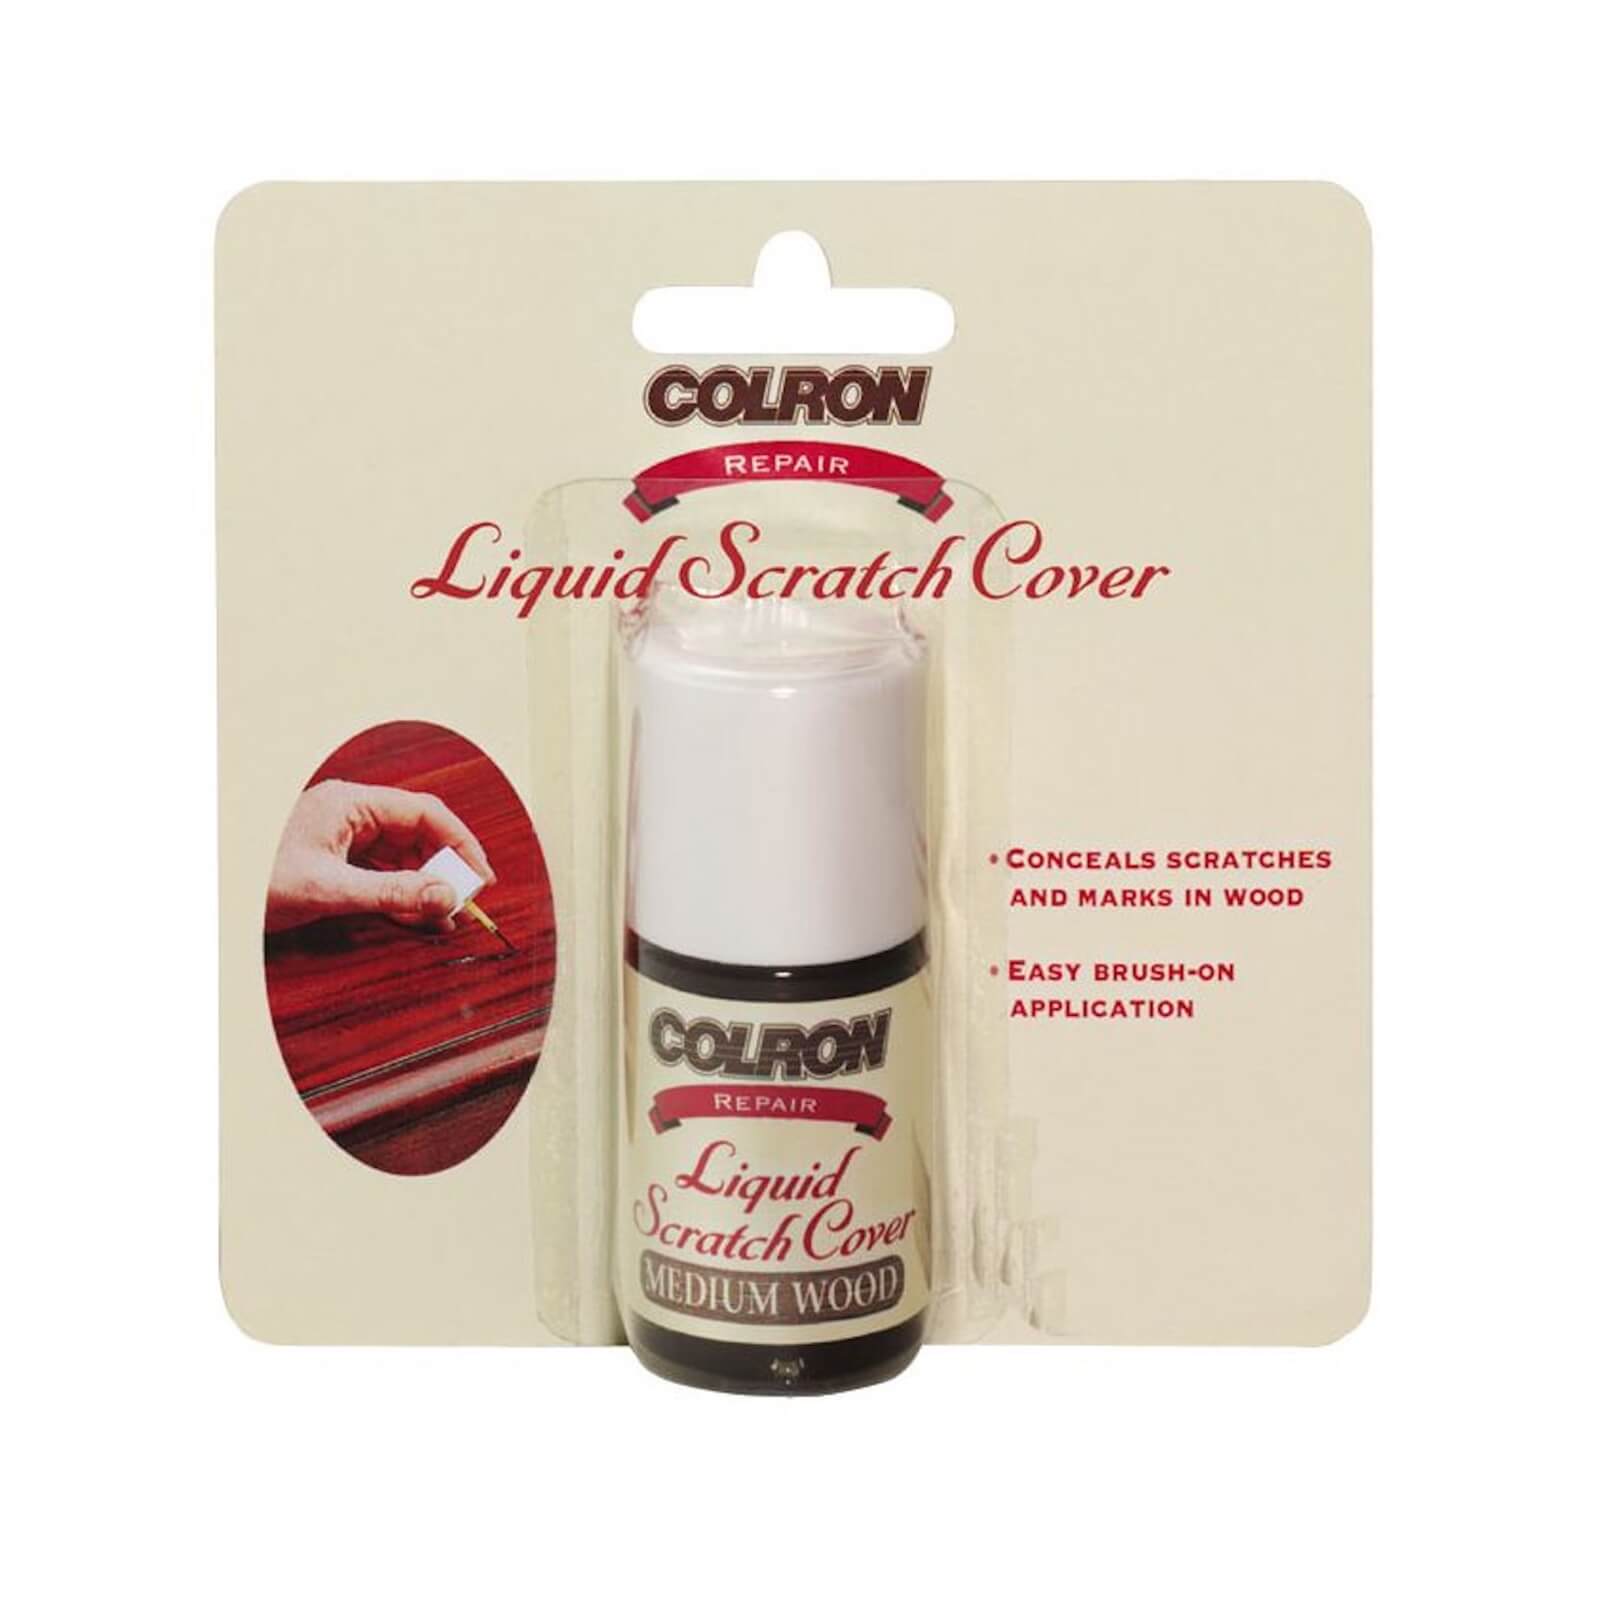 Colron Dark Liquid Scratch Cover